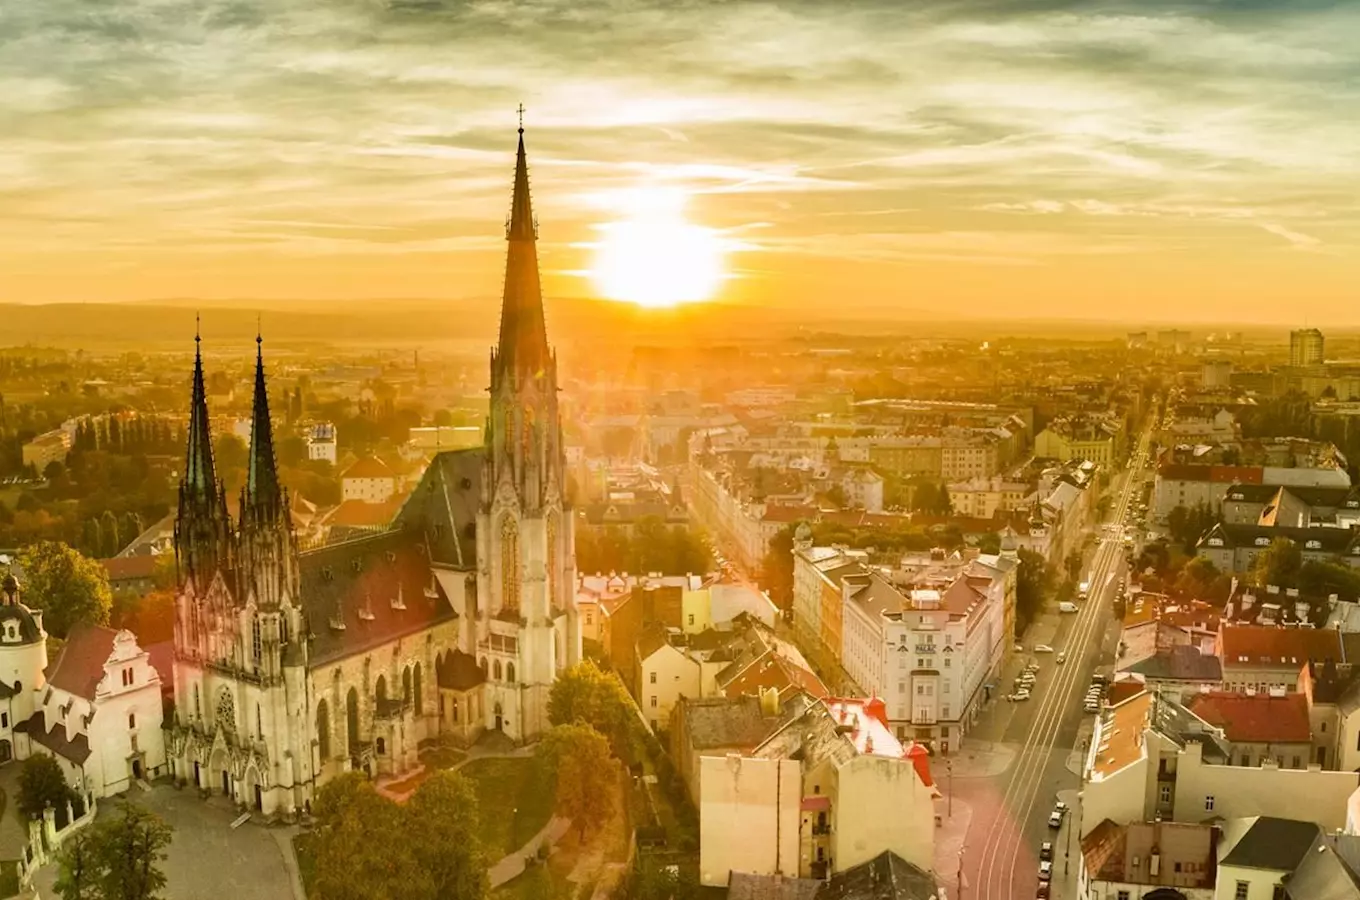 Velkolepé svátky historie, umění a architektury oživují Olomouc